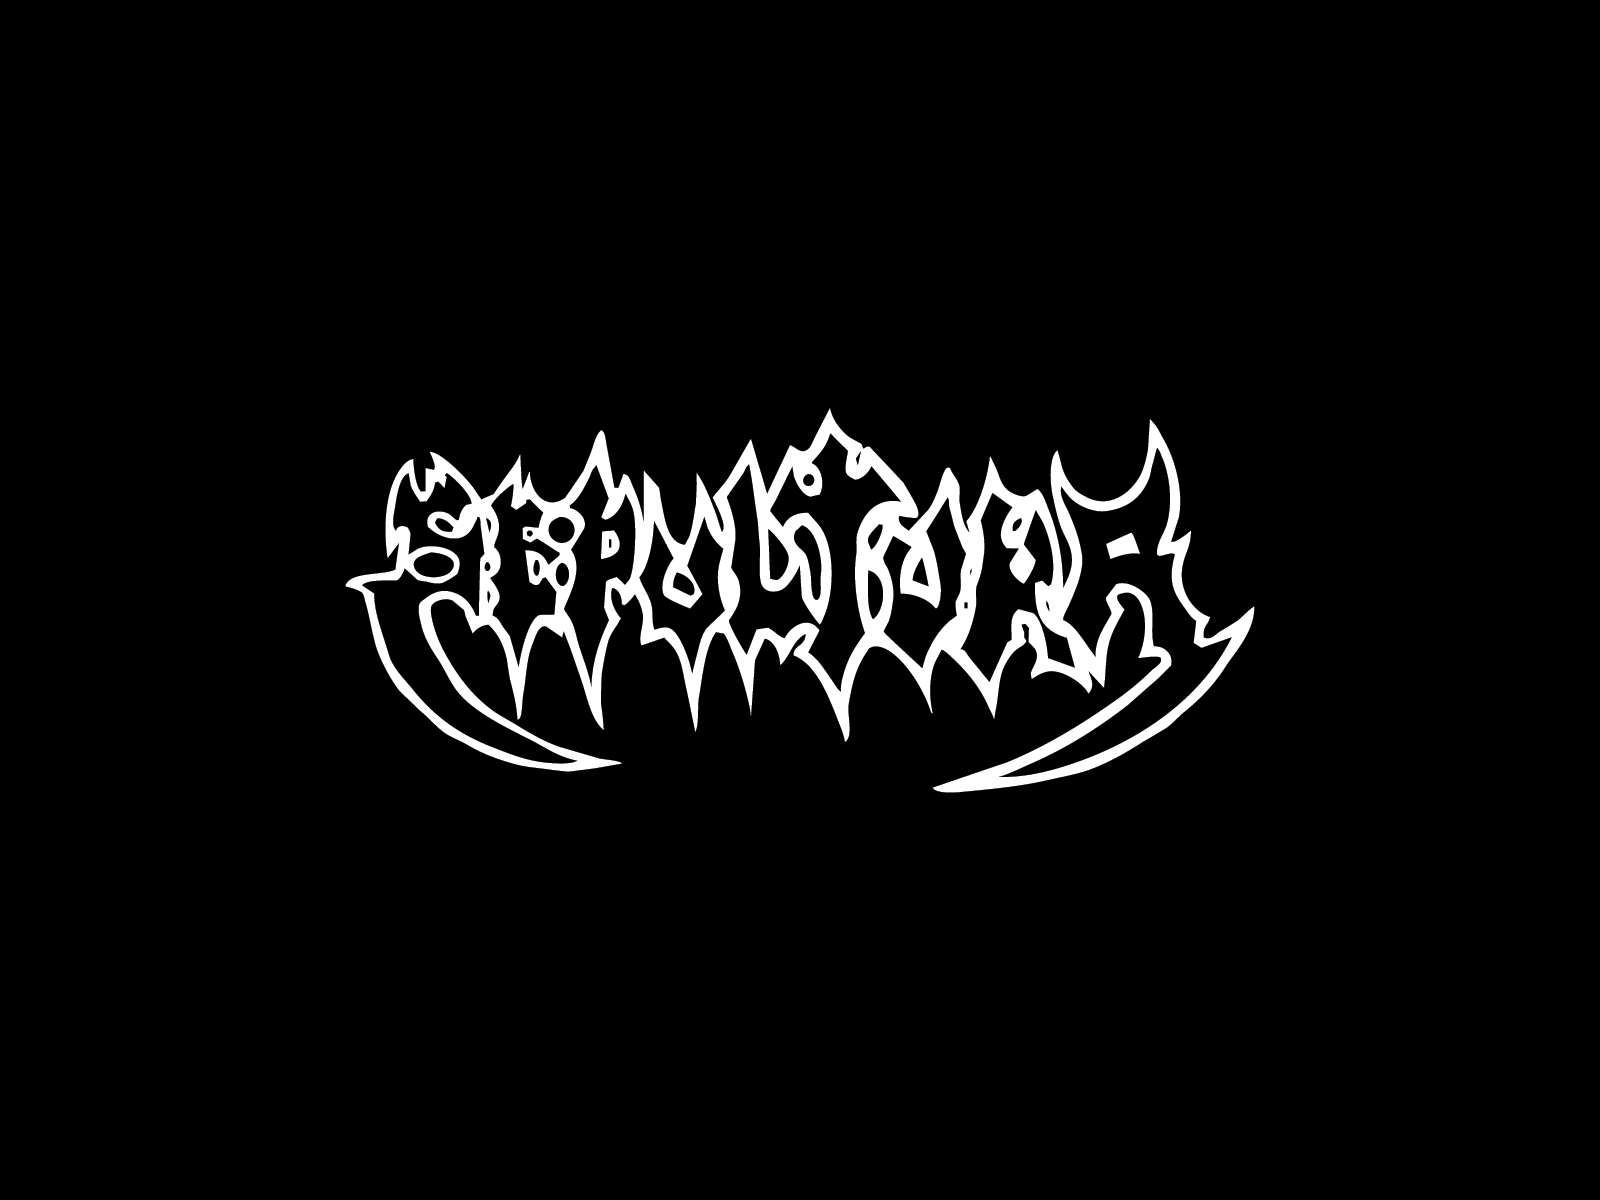 Sepultura Logo And Wallpaper Band Logos Rock